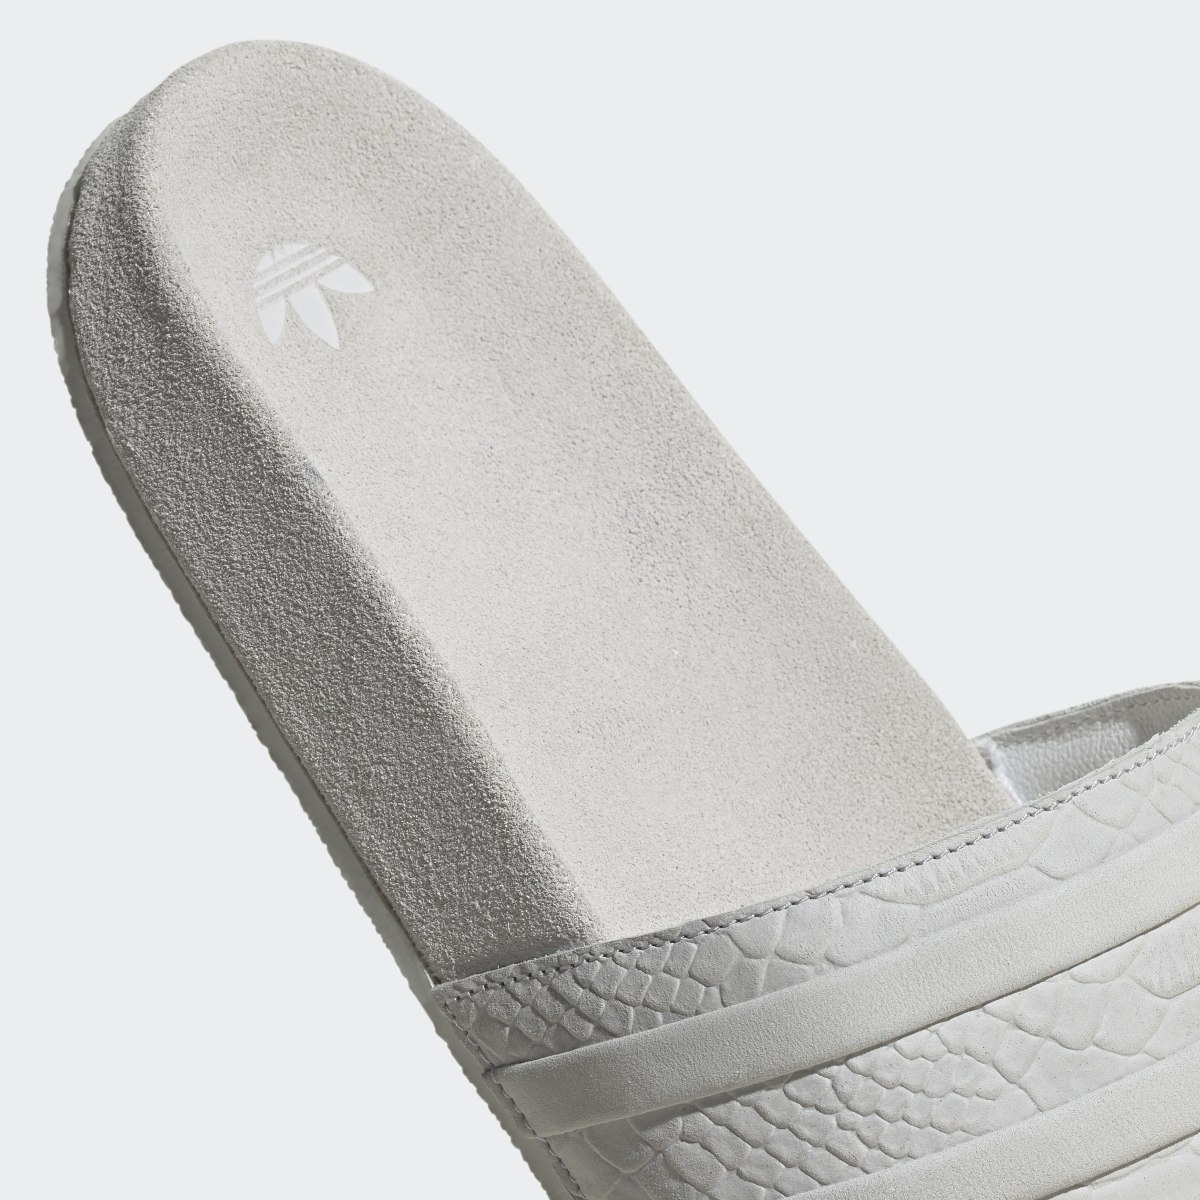 Adidas adilette Slides. 9